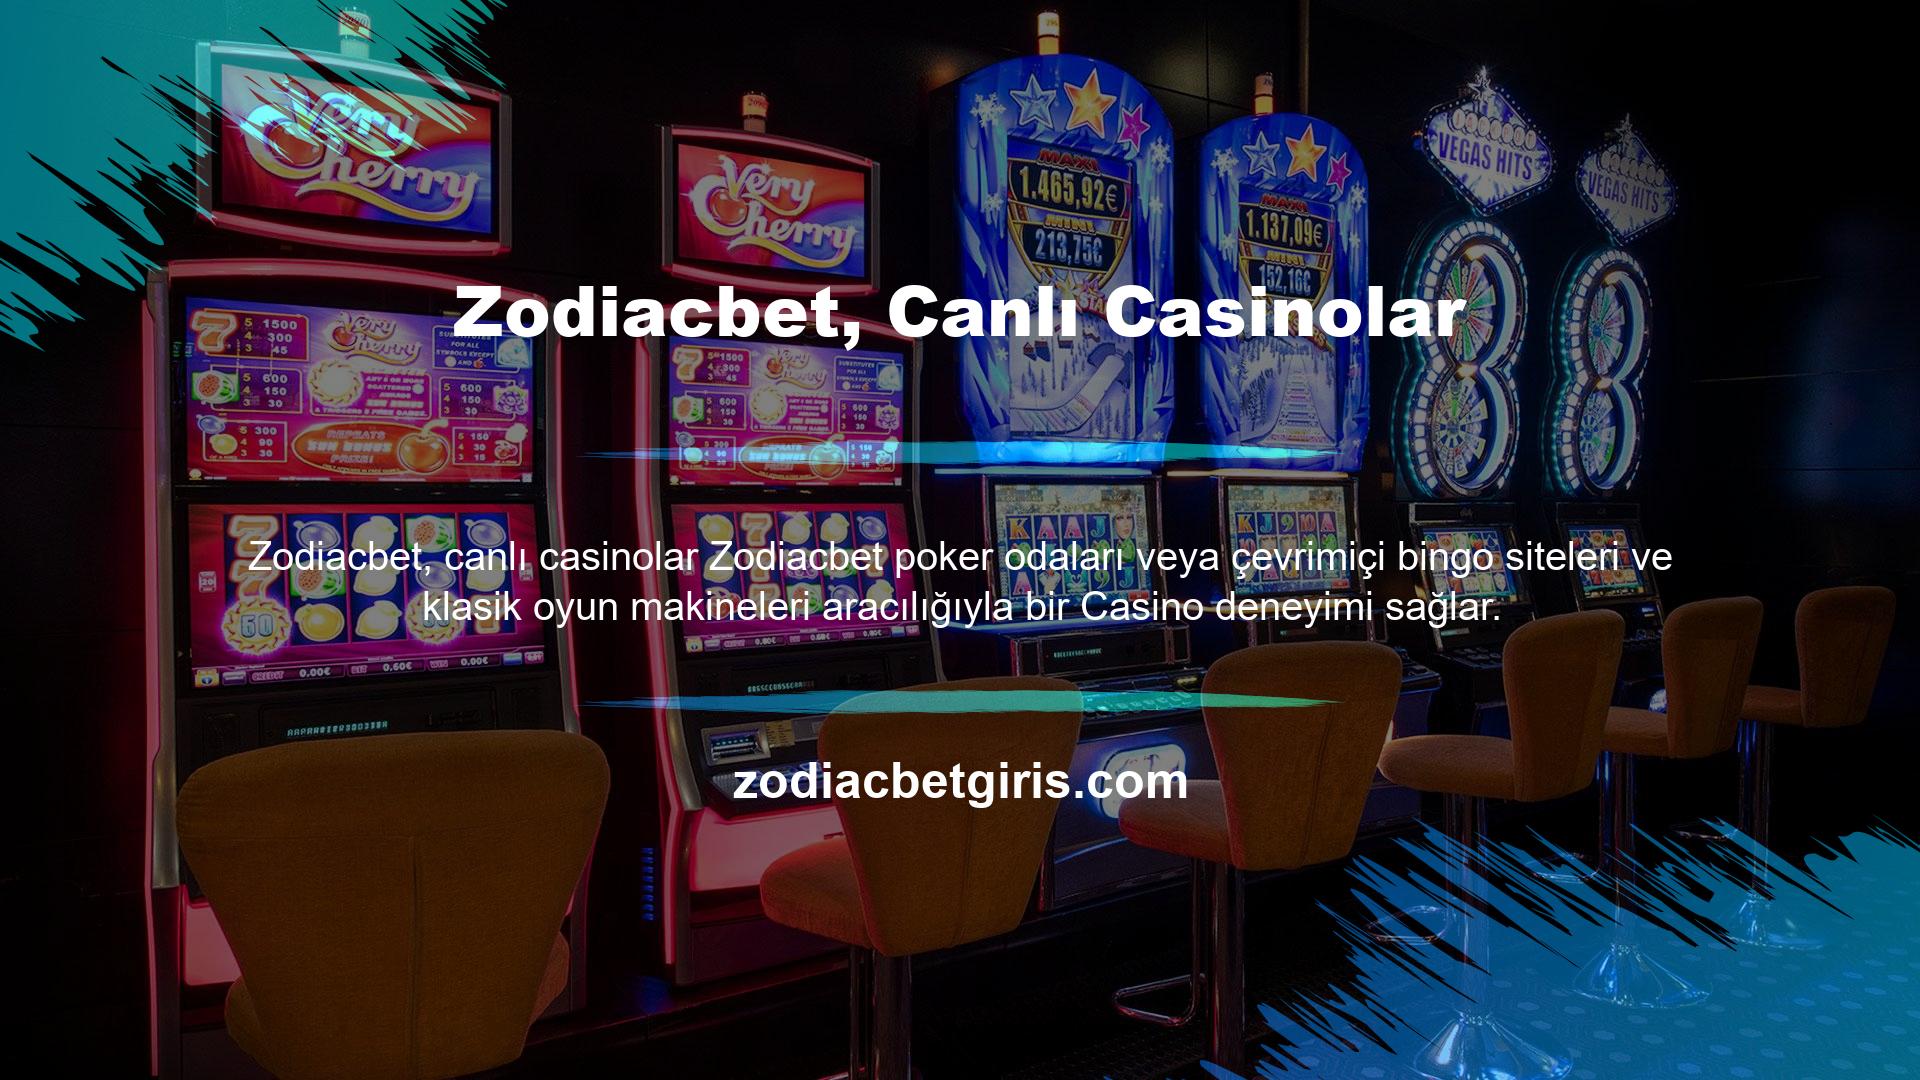 Sistem hem canlı casino oyunları hem de slot oyunları sunabilme özelliğine sahiptir